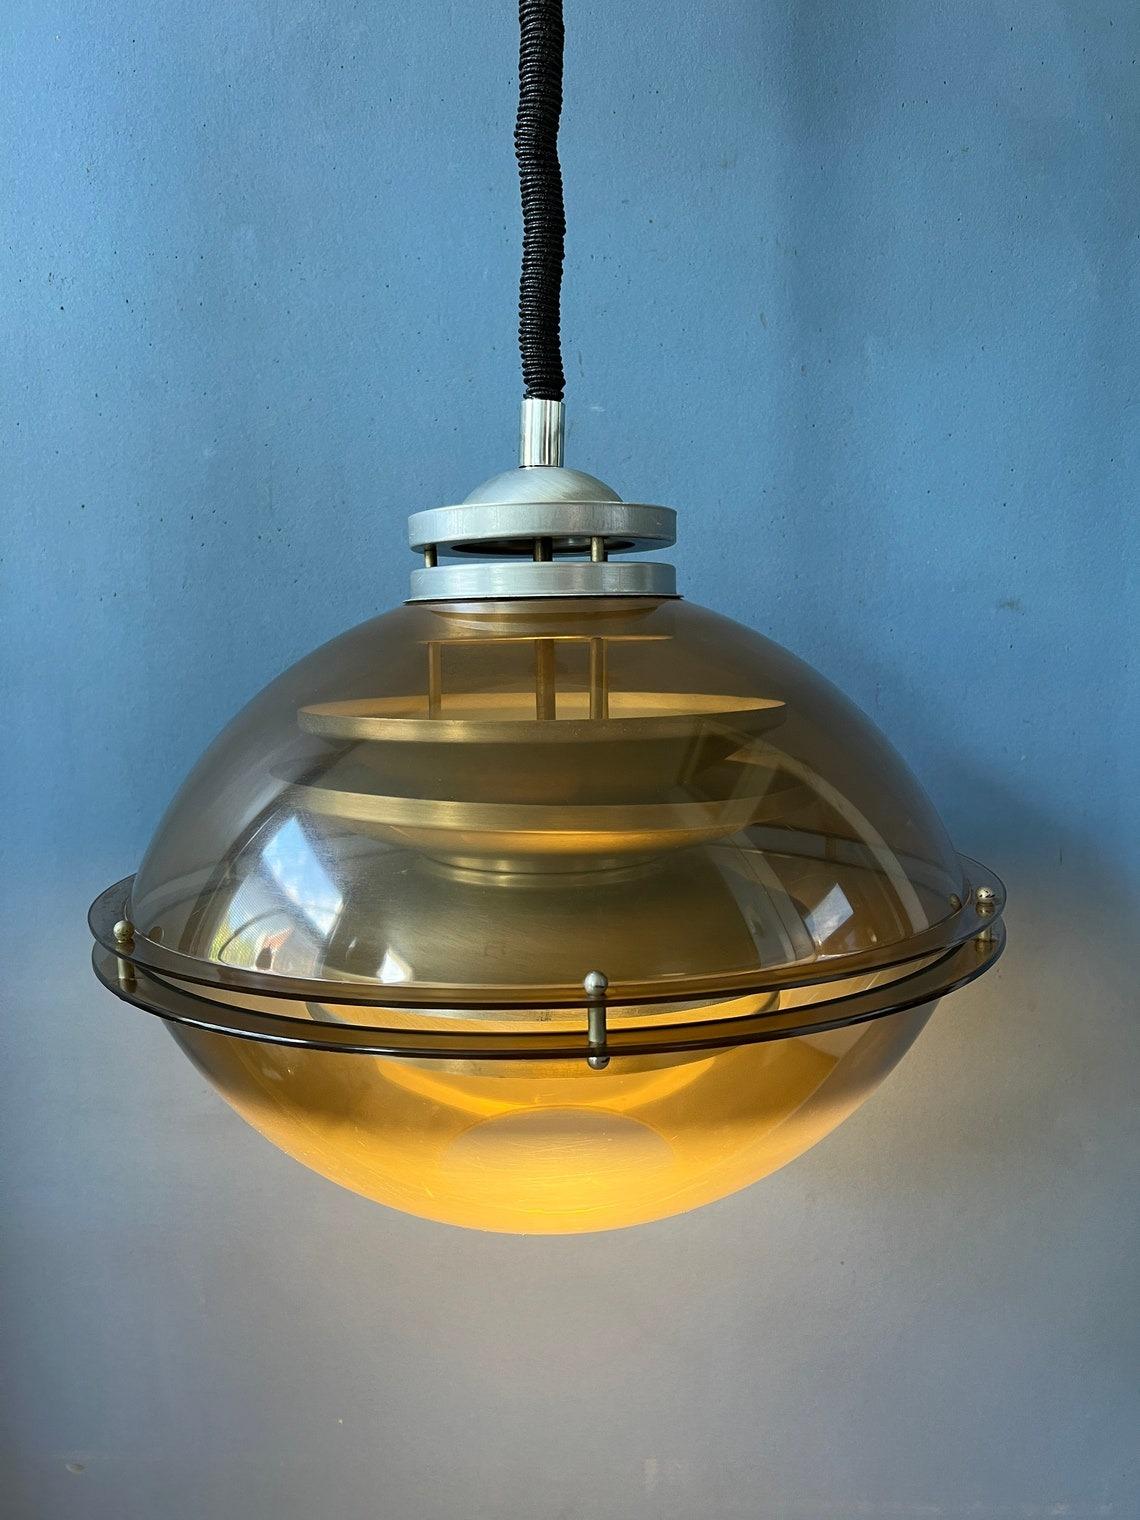 Eine ganz besondere Space-Age-Pendelleuchte der niederländischen Marke Herda. Die Lampen bestehen aus einem braun/kupferfarbenen Außenschirm und einem Aluminium-Innenschirm. Die Lampe benötigt eine E27-Glühbirne und hat derzeit einen